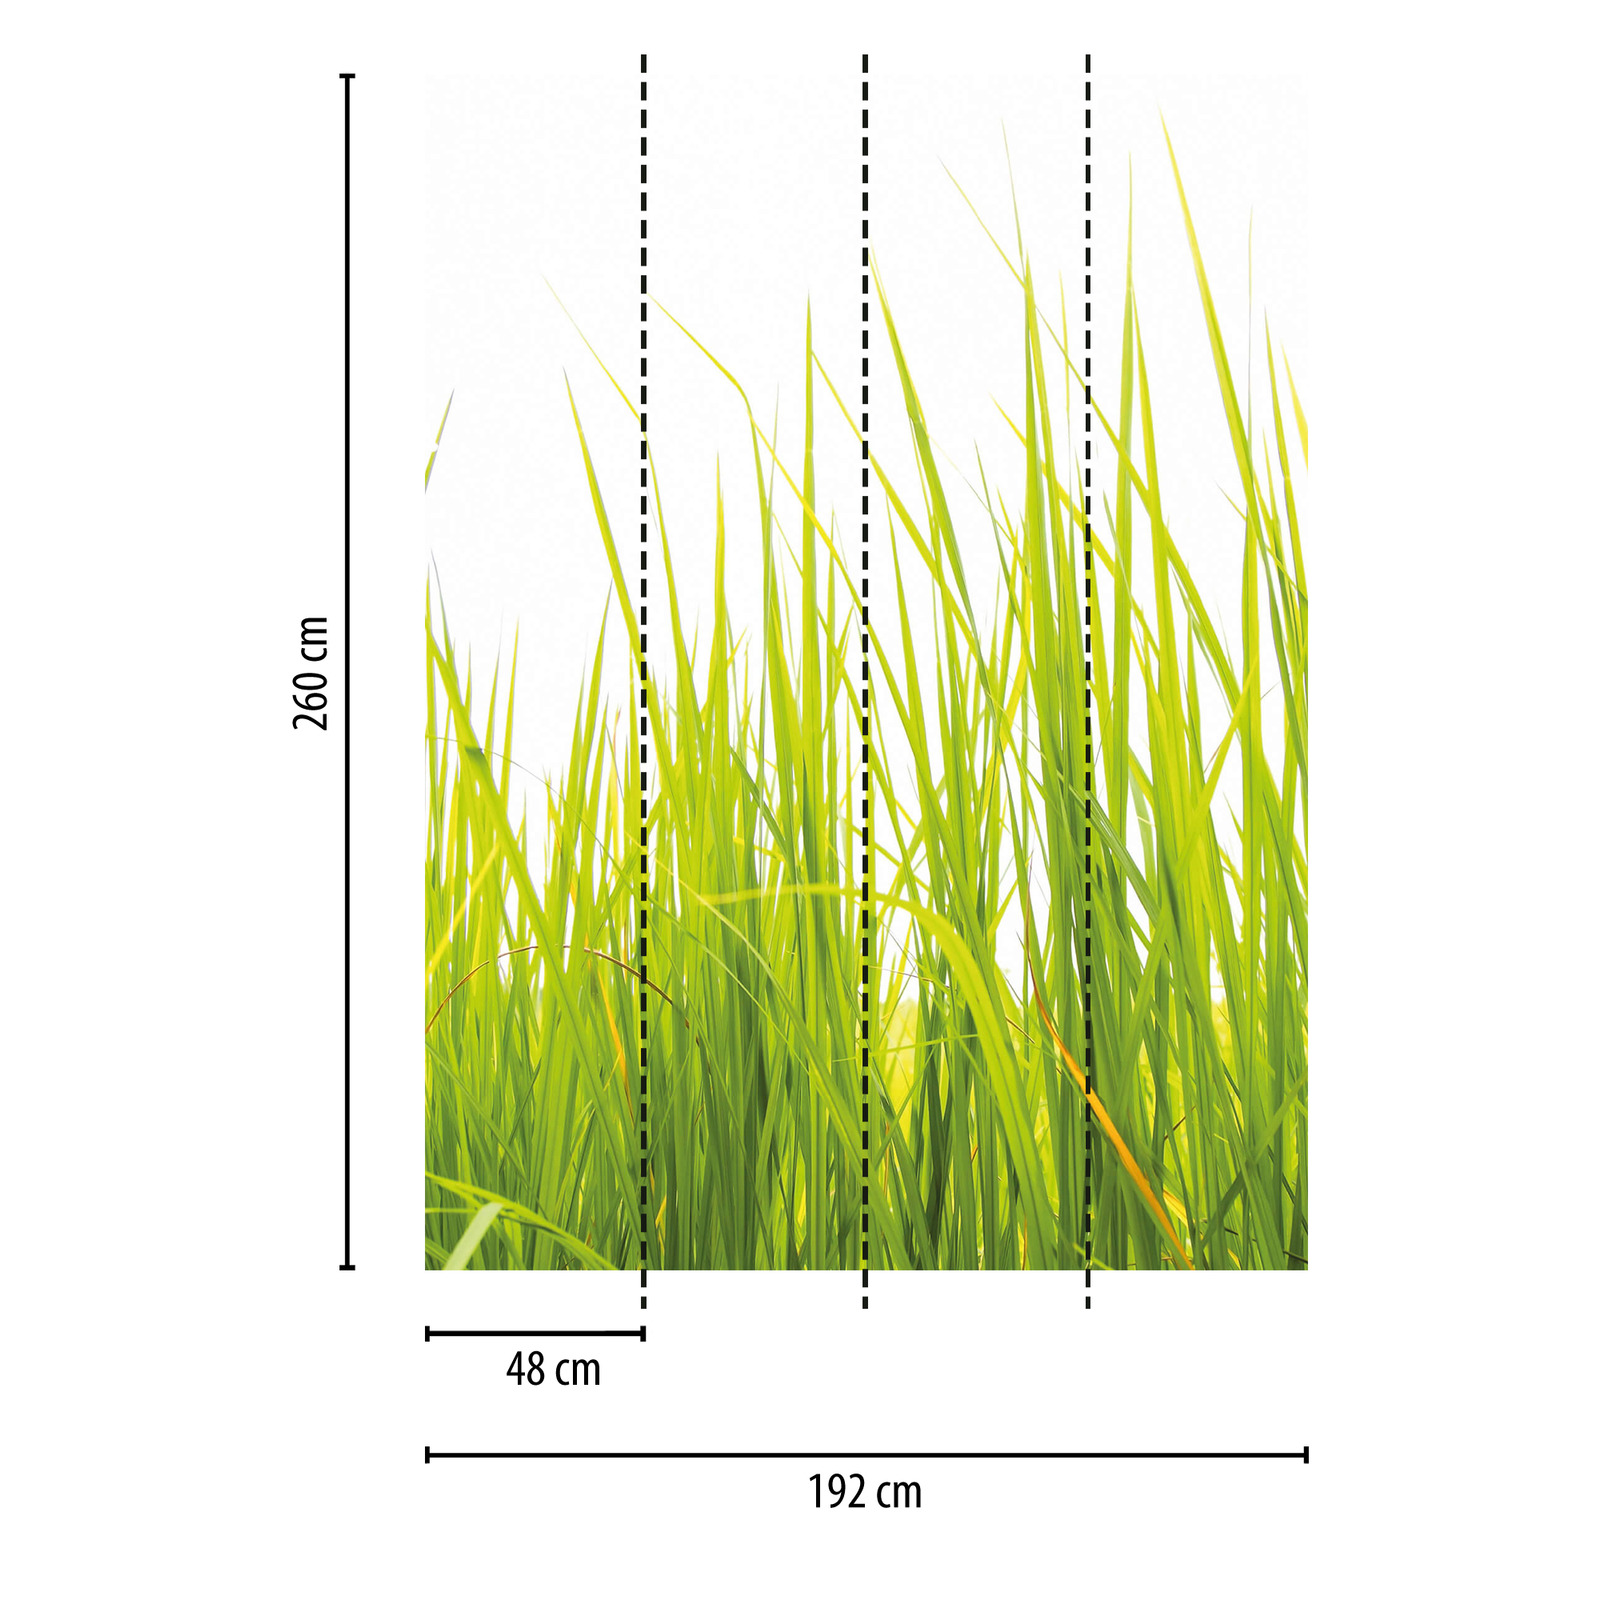             Narrow Nature Tall Grass Behang - Groen
        